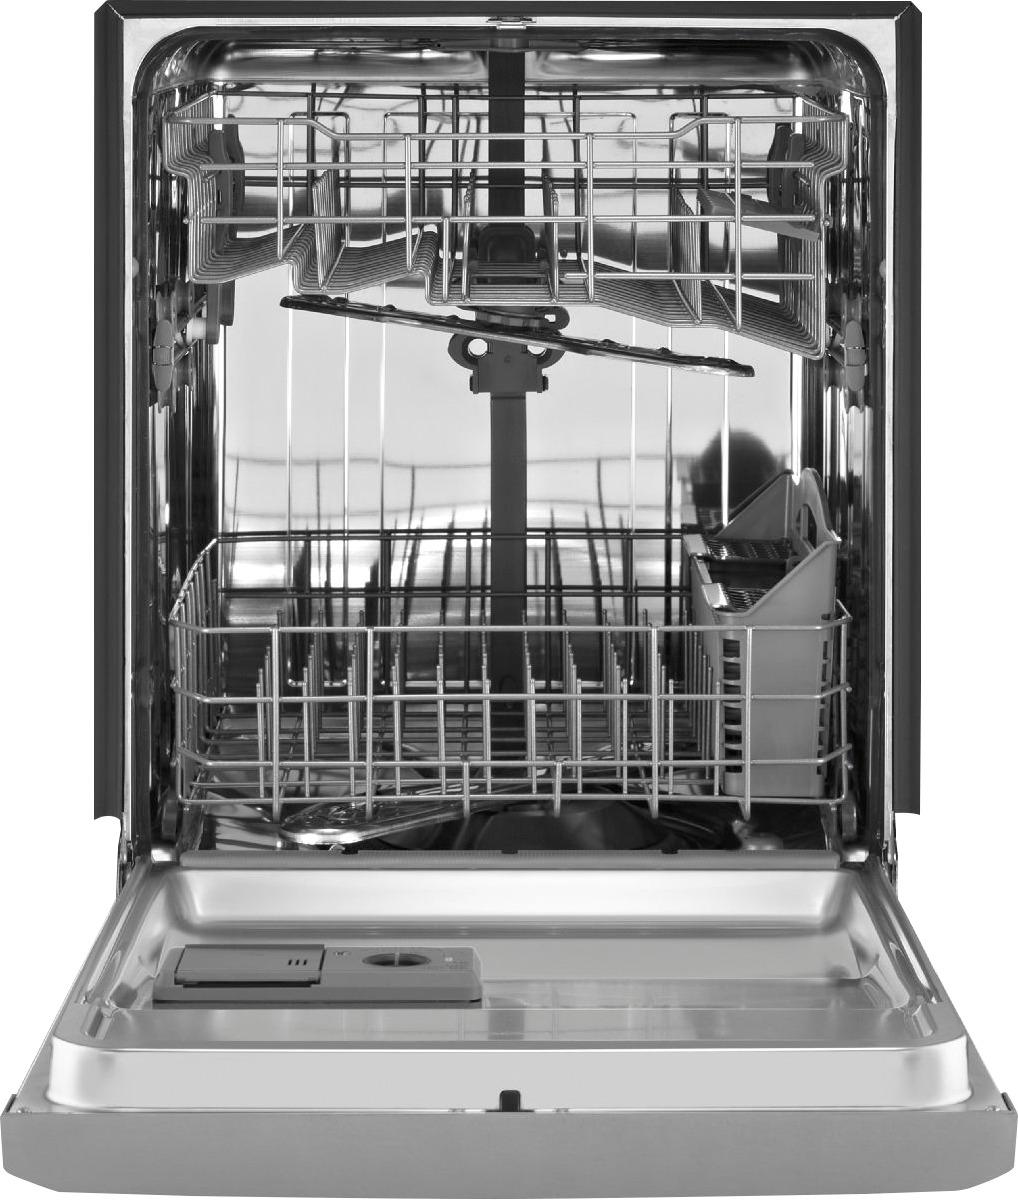 maytag dishwasher model mdb4949sdz0